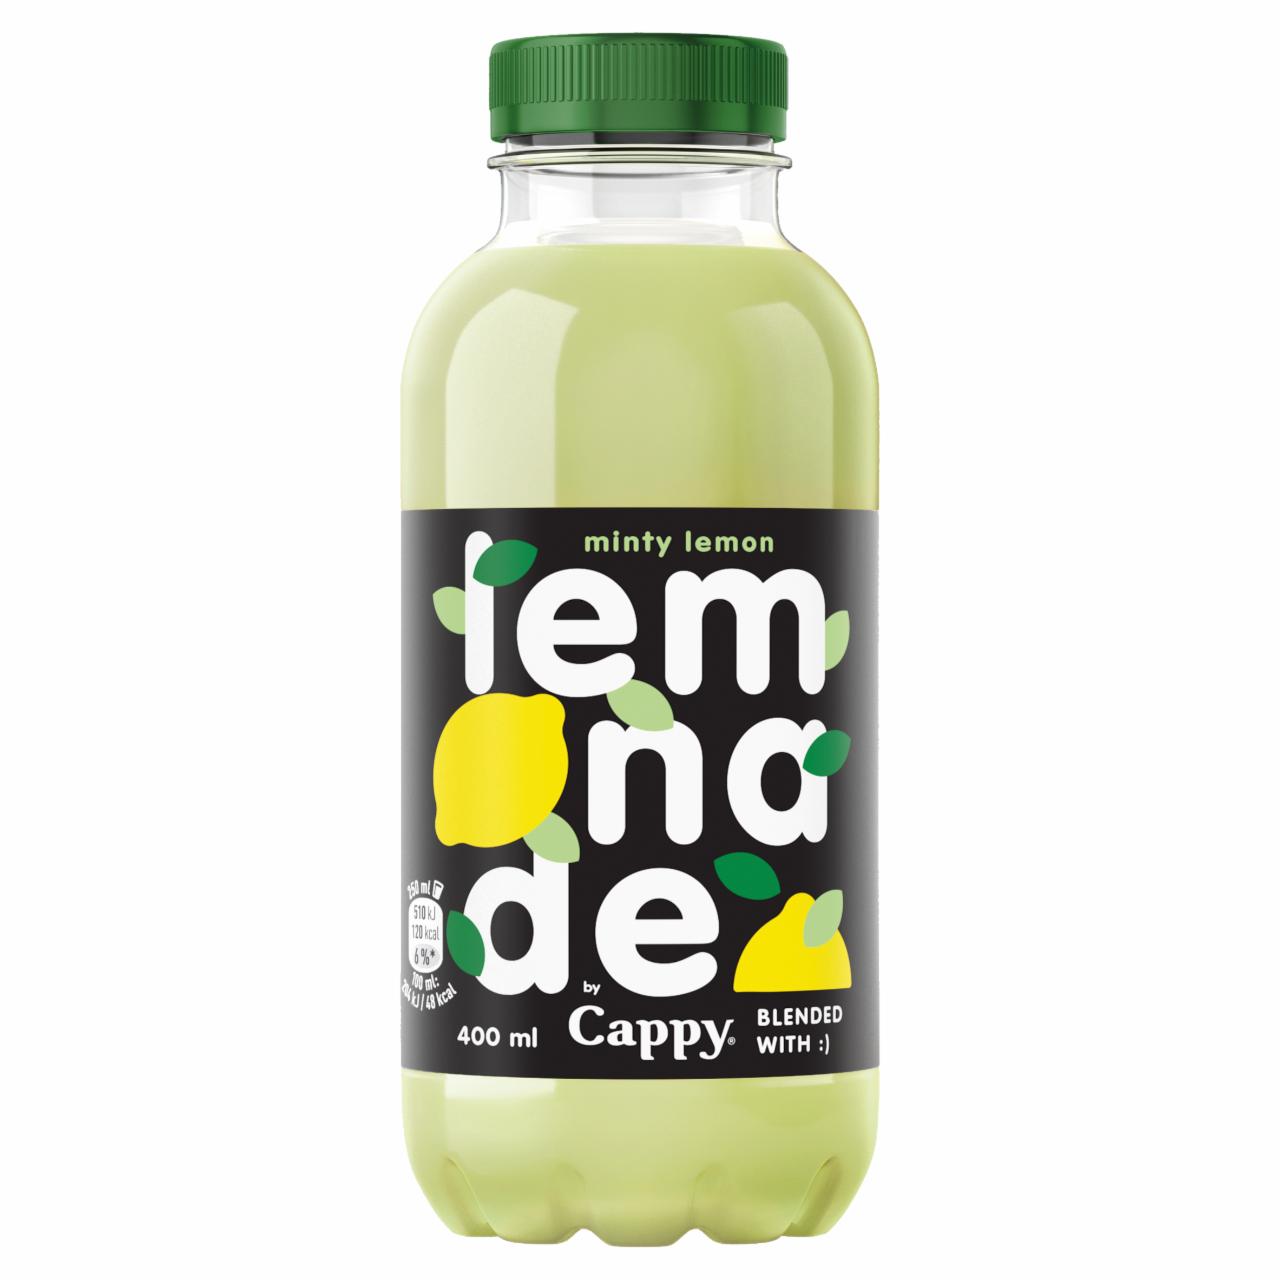 Képek - Cappy Lemonade szénsavmentes citrom-menta üdítőital 400 ml